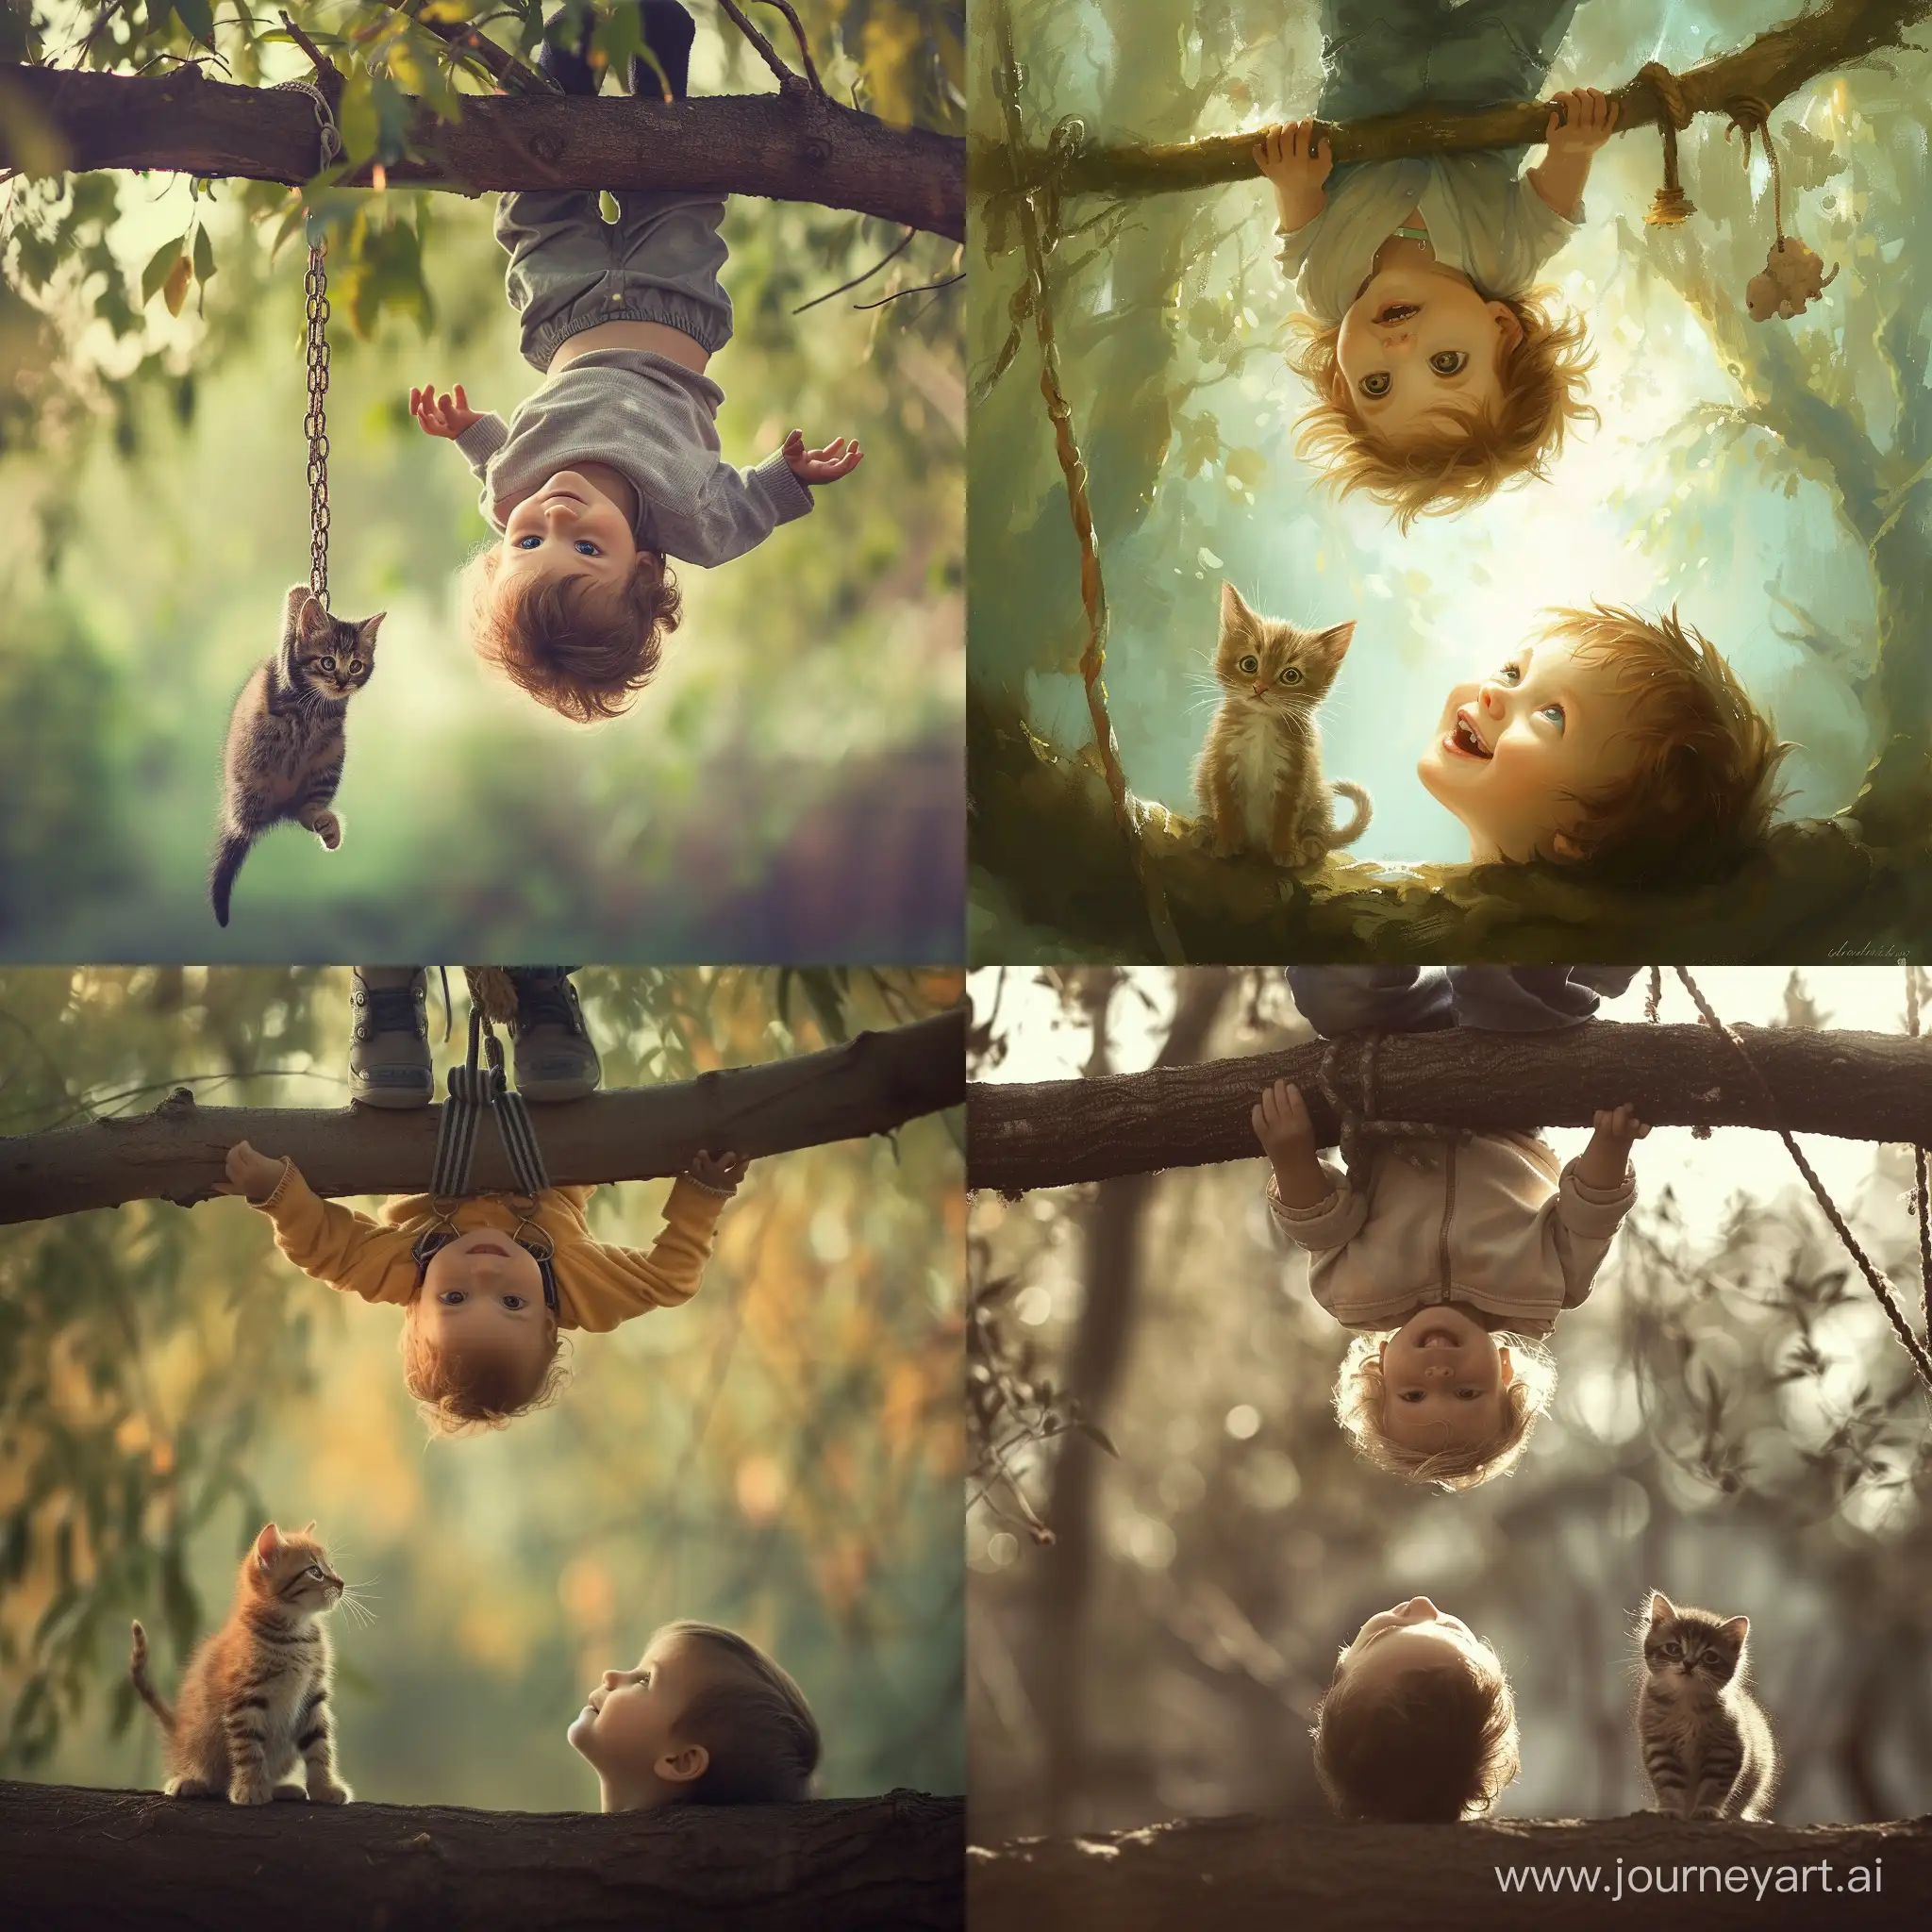 Счастье,,,  ребенок висит вниз головой на ветви дерева...  Рядом маленький котенок на него смотрит... Игривое, счастливое детство... 